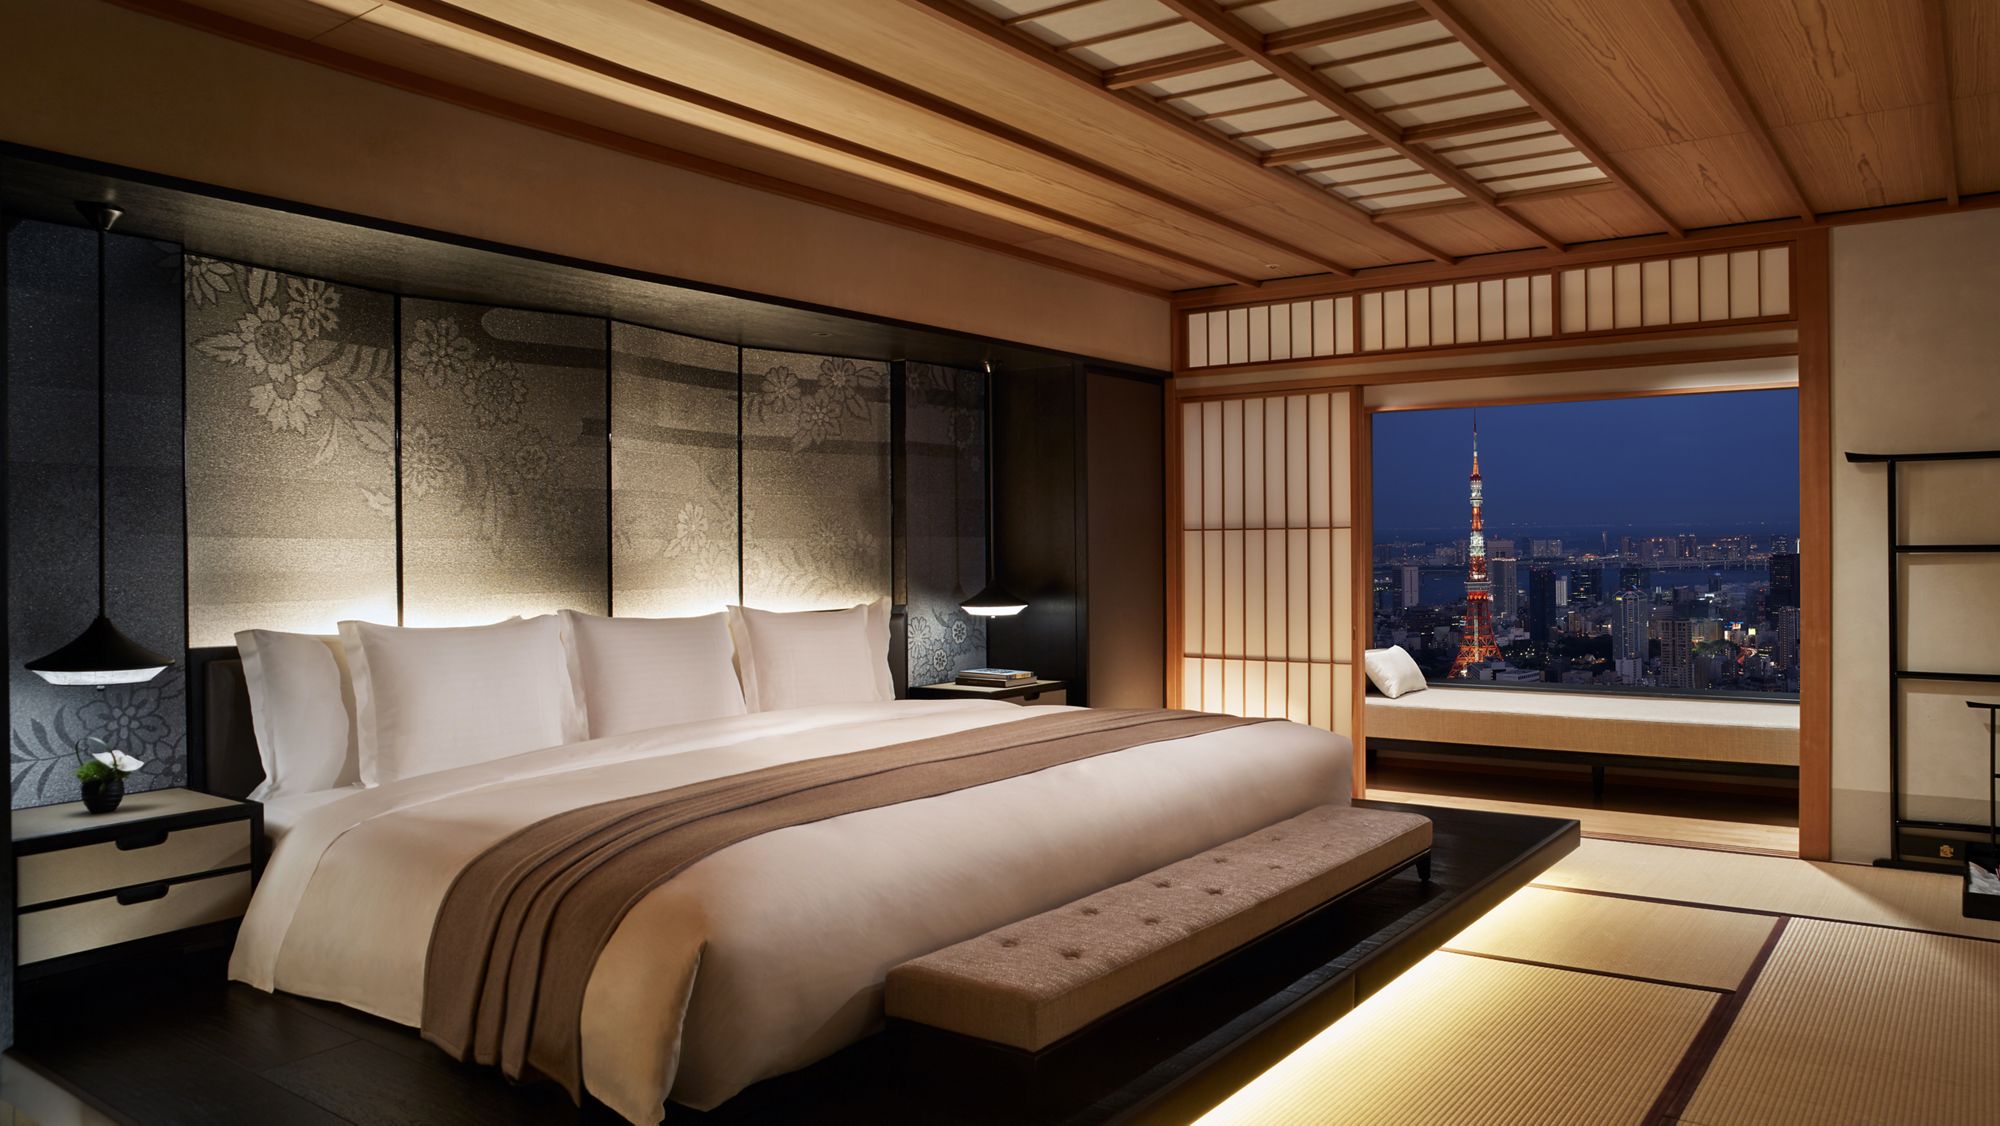 Idées déco : comment se créer une chambre japonaise ?